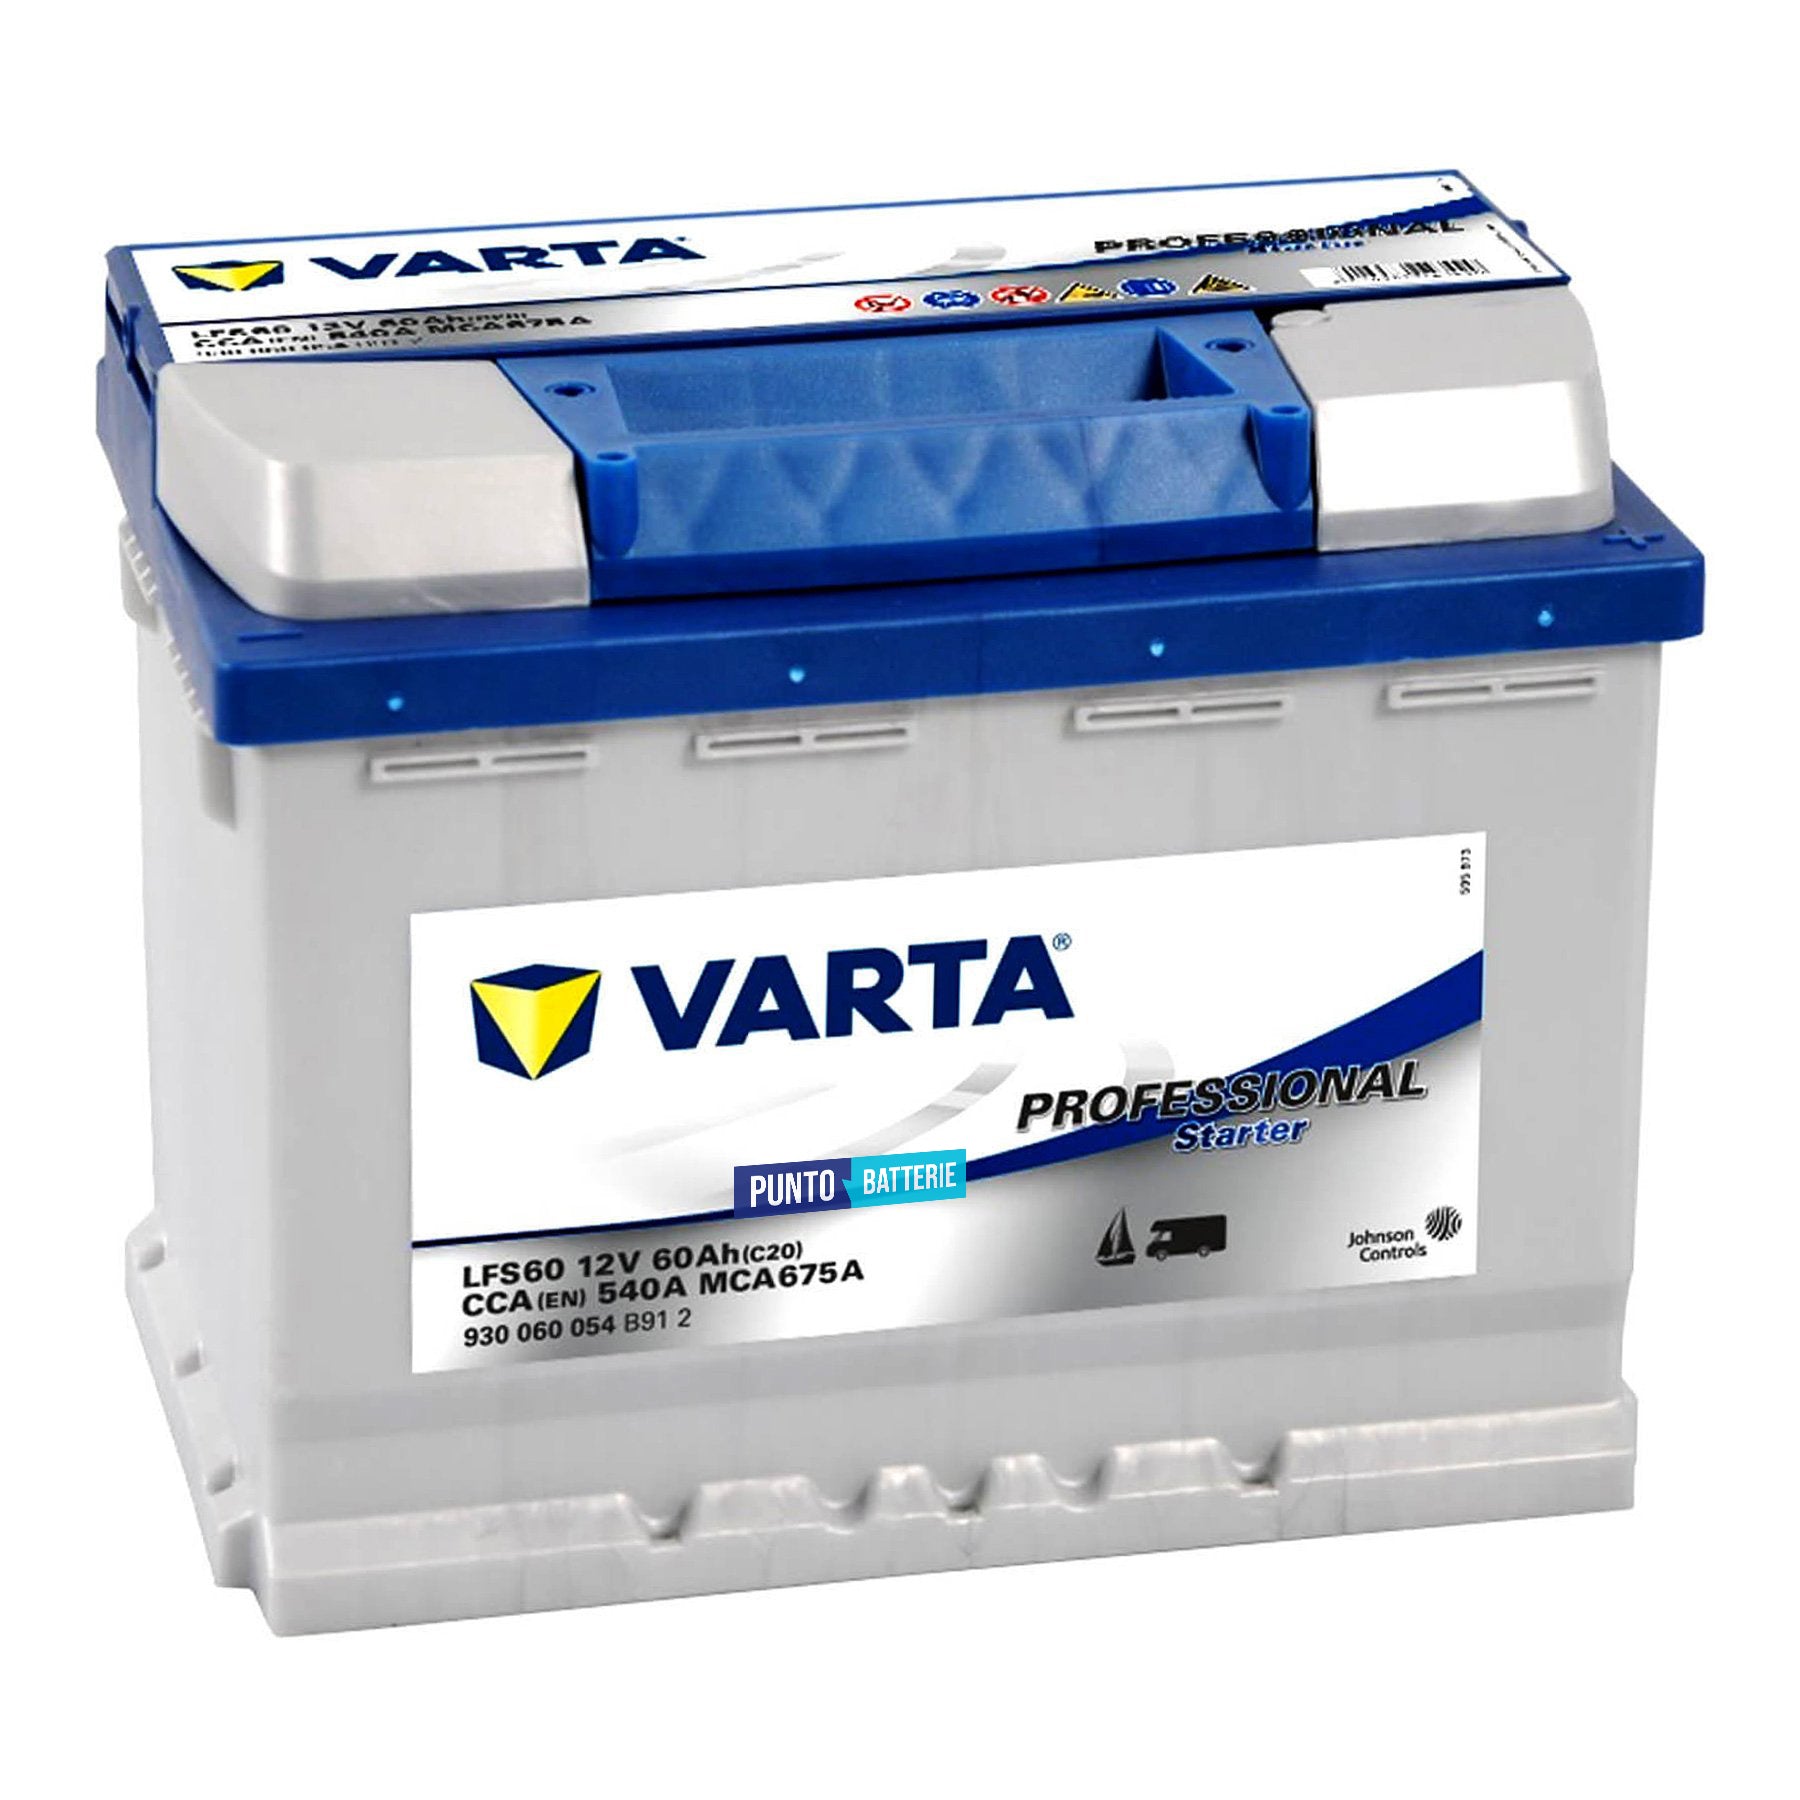 Batteria originale Varta Professional Starter LFS60, dimensioni 242 x 175 x 190, 12 volt, 60 amperora. Batteria per nautica e campeggio.